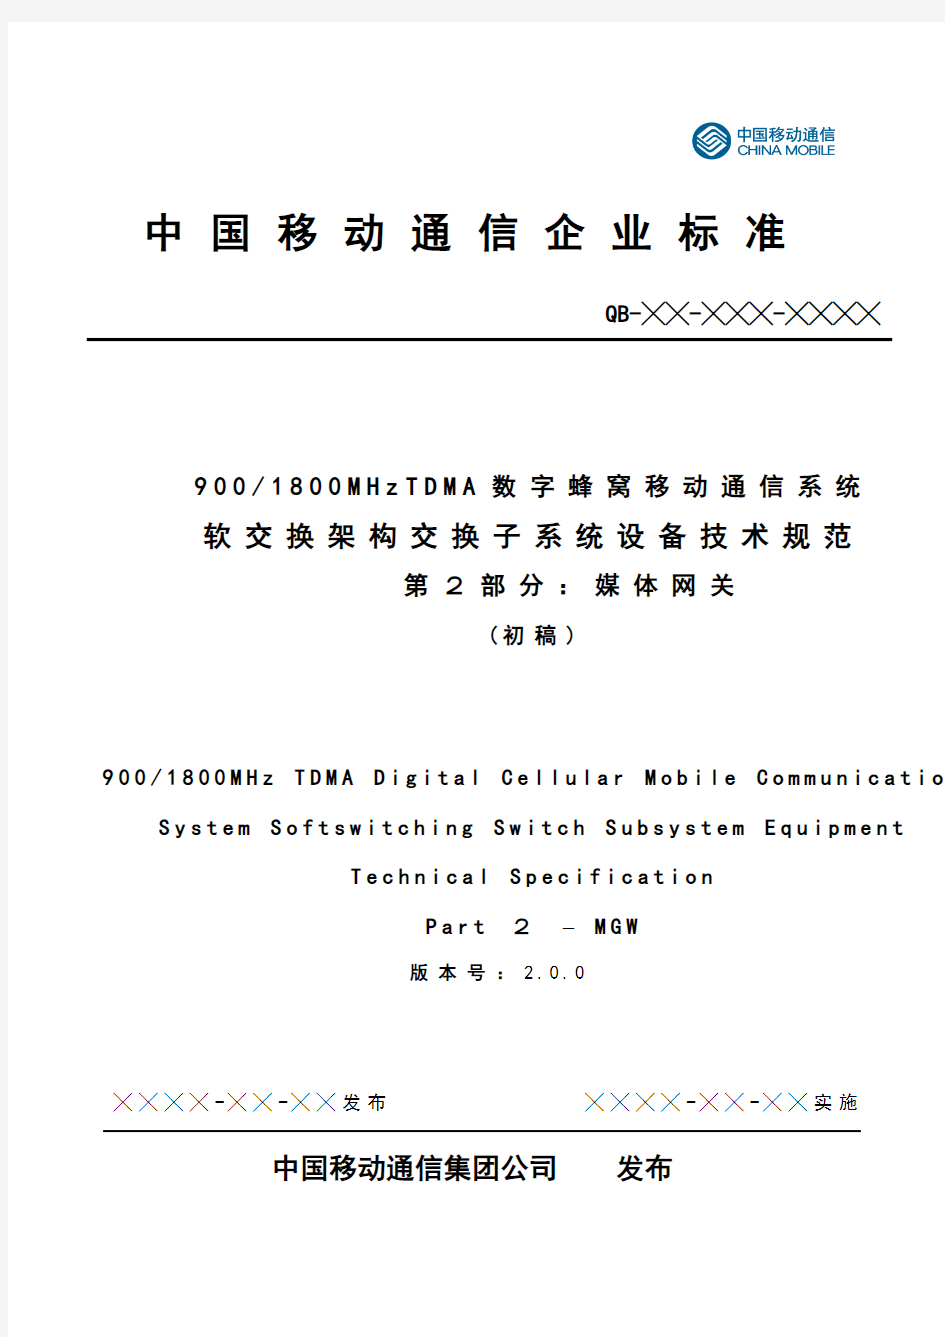 中国移动2G软交换MGW设备规范v2.0.0